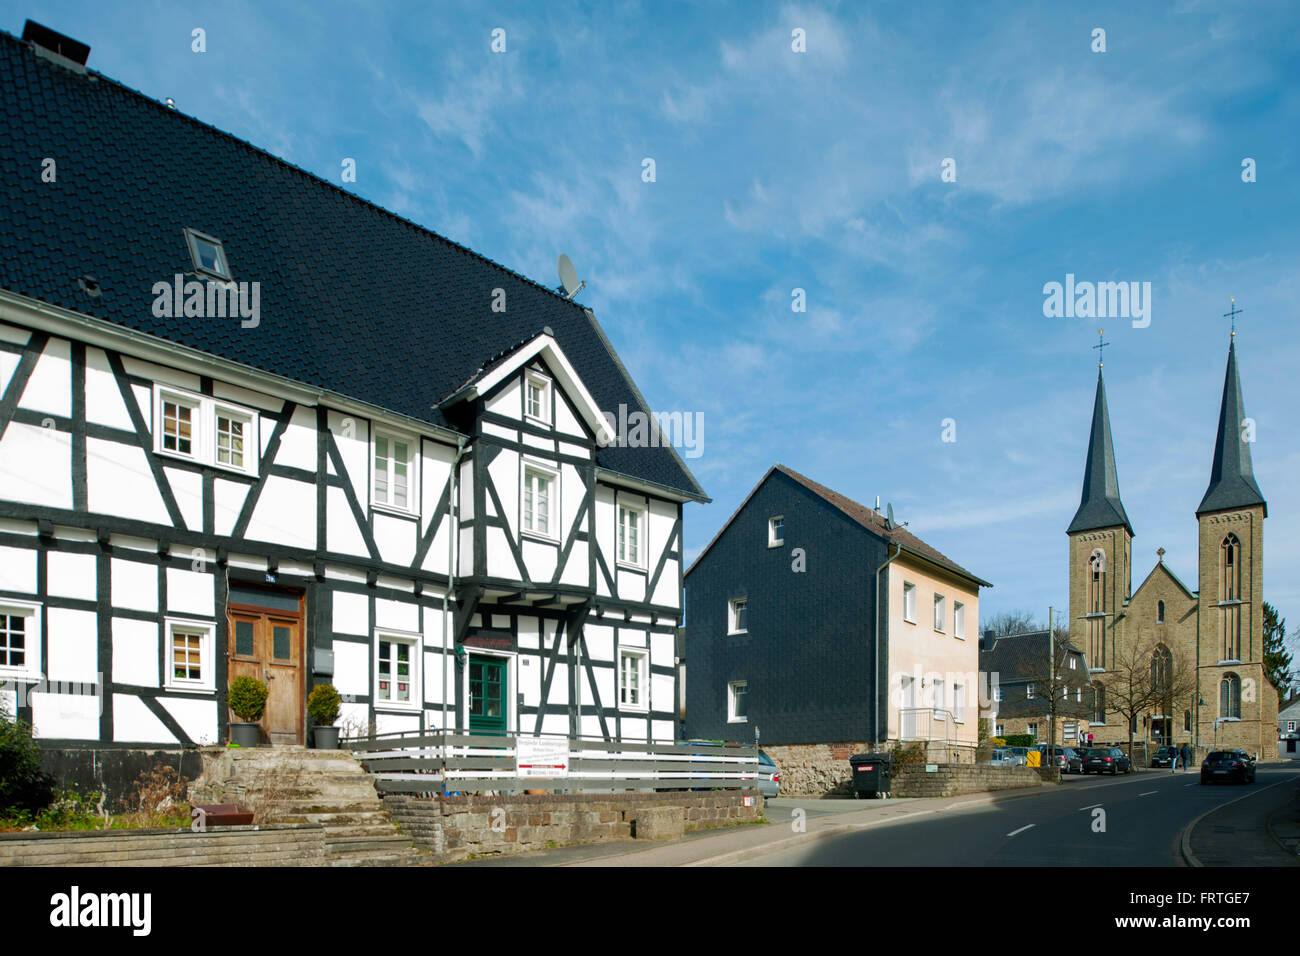 Allemagne, Rheinisch Bergischer Kreis, Overrath-Marialinden, ältestes Haus der Ortschaft an der Pilgerstrasse 19-21, Baudenkmal Nr. 109, im Hintergrund Banque D'Images